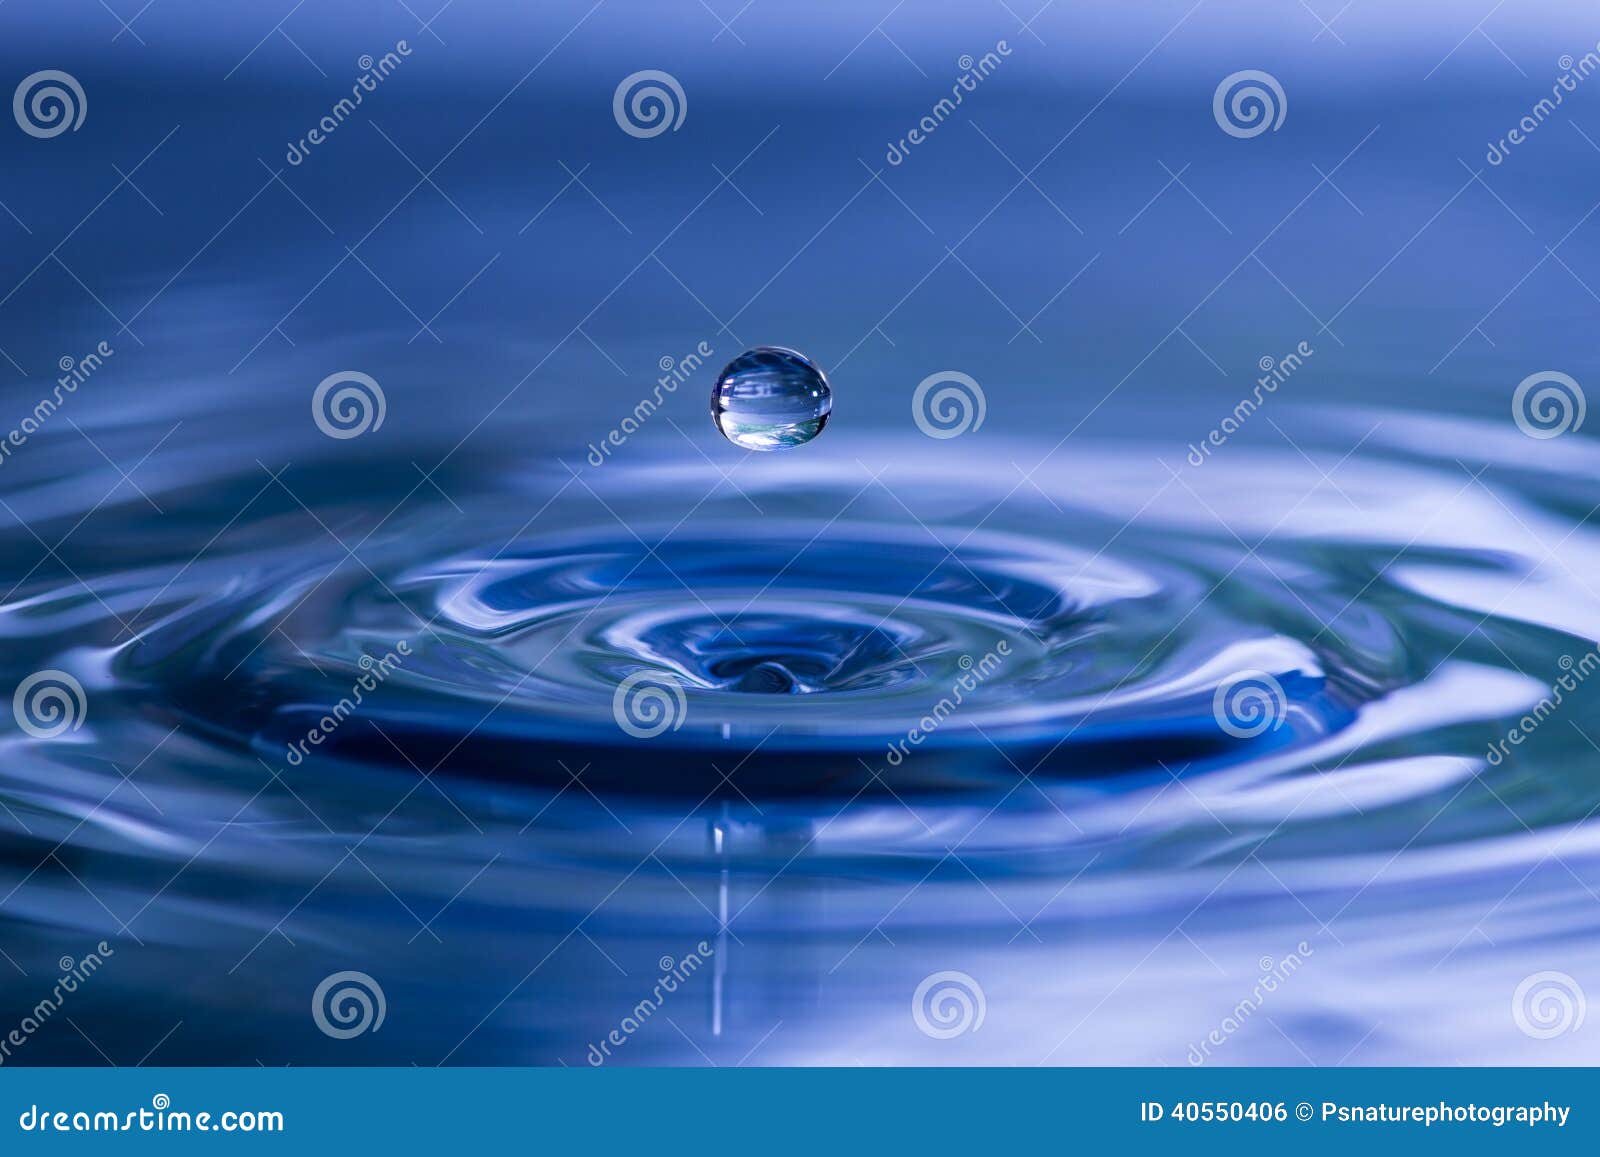 spherical water droplet